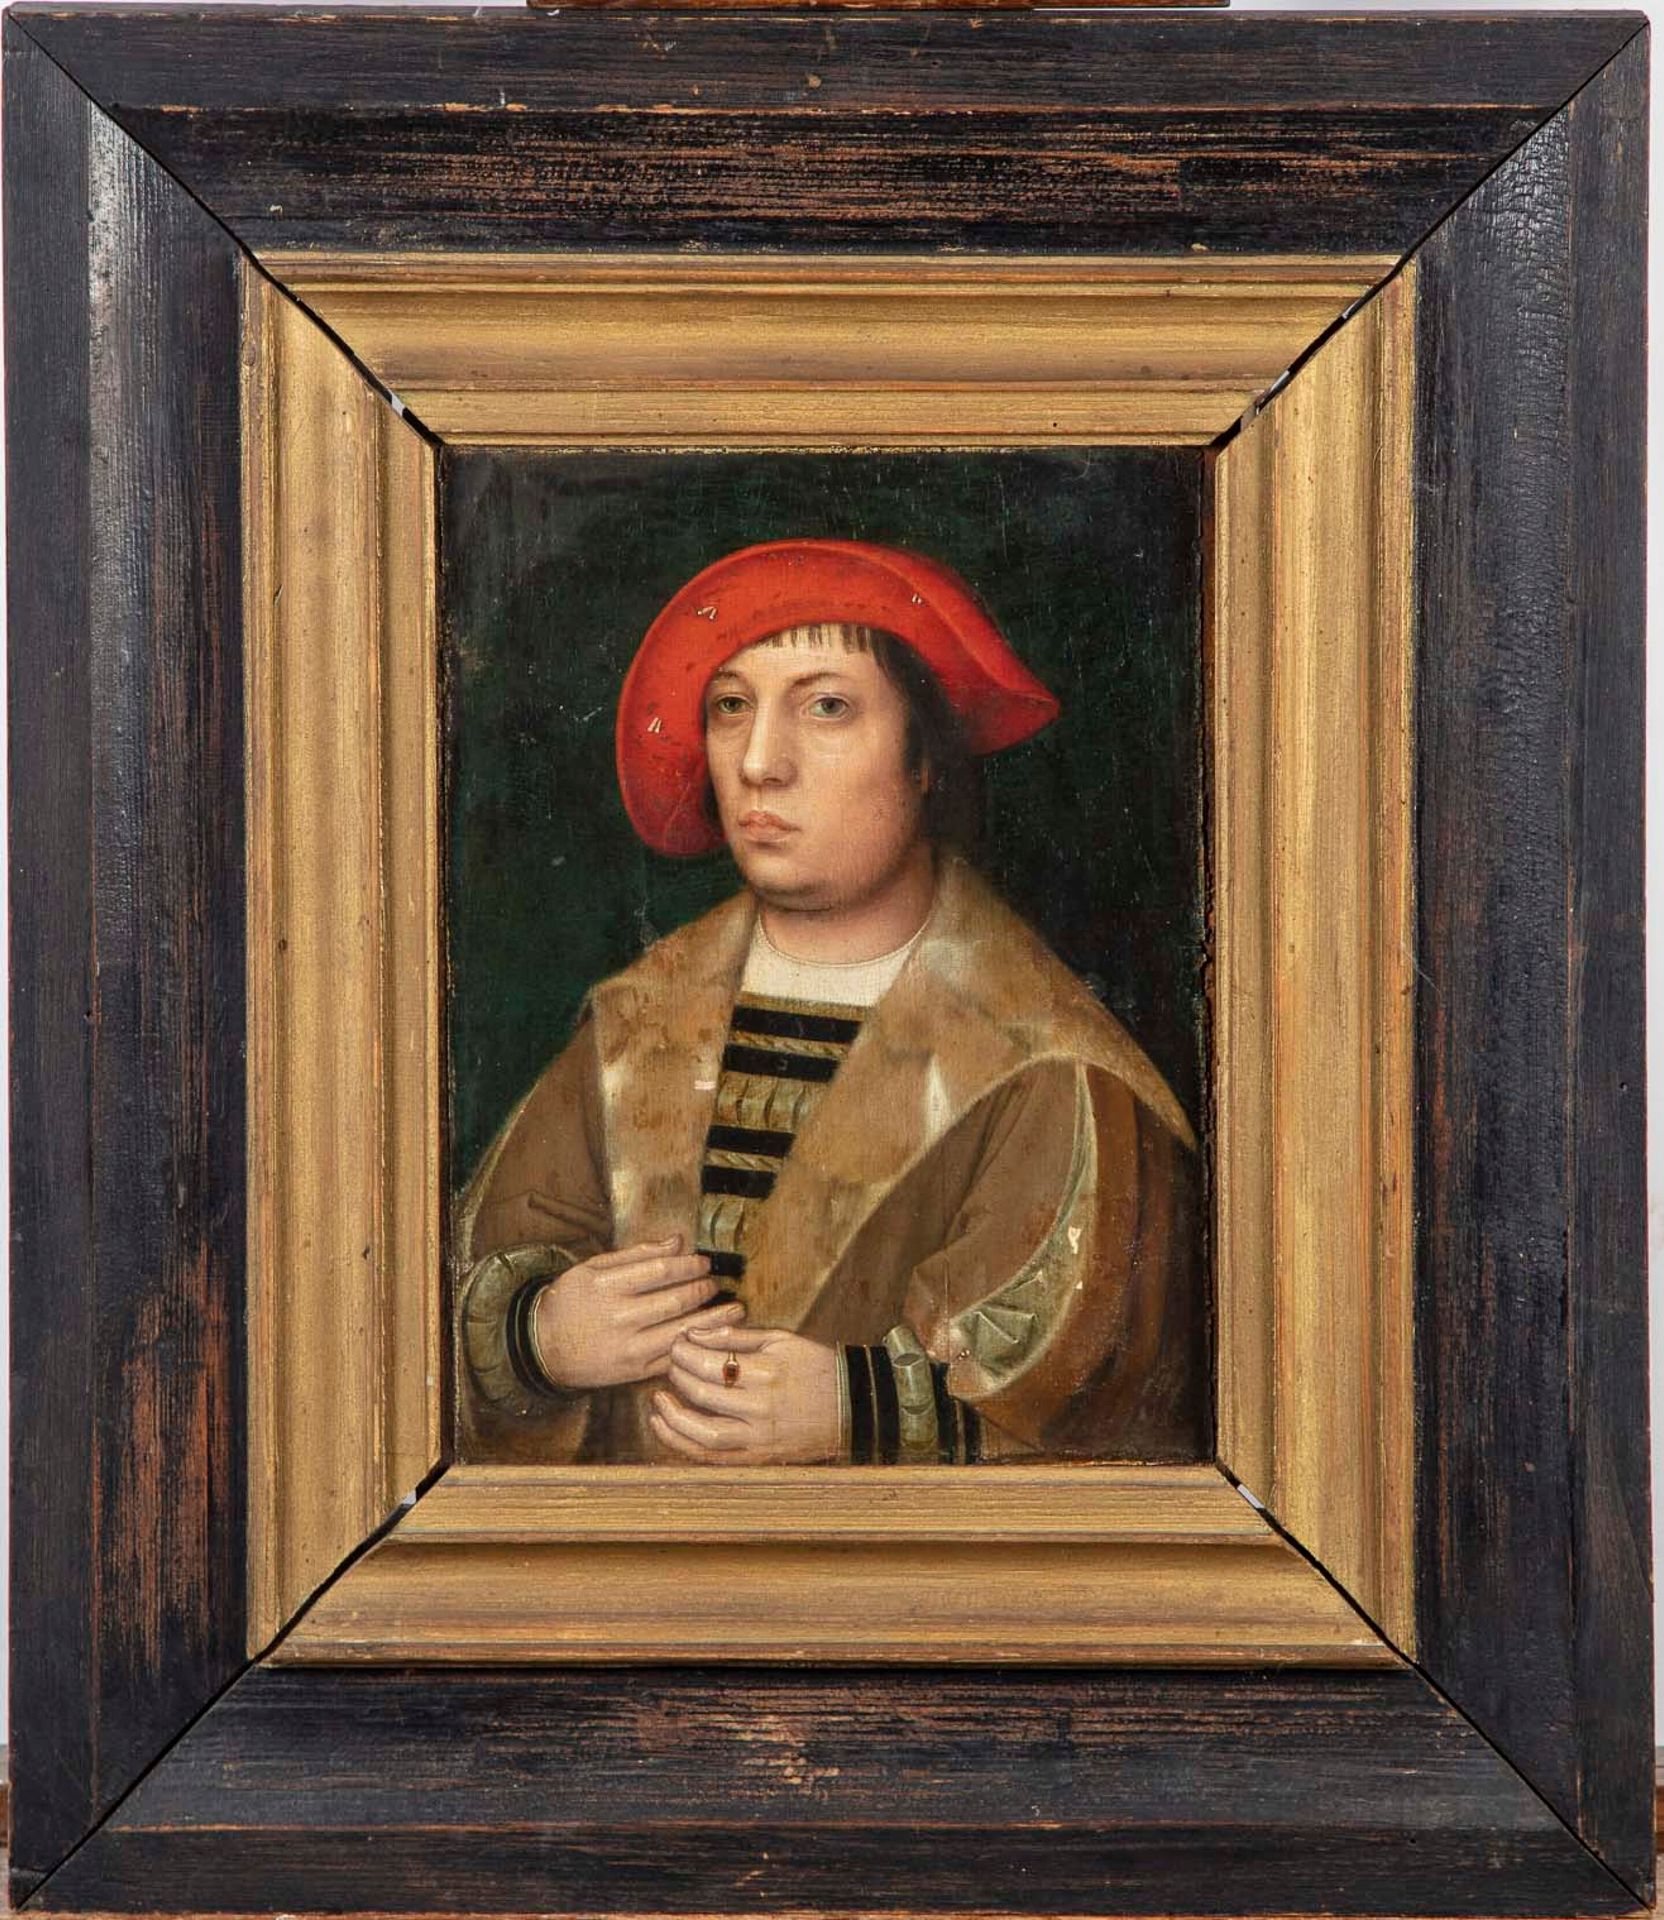 ECOLE DU NORD NORTHERN SCHOOL vom Ende des 16. Jahrhunderts

Porträt eines Manne&hellip;